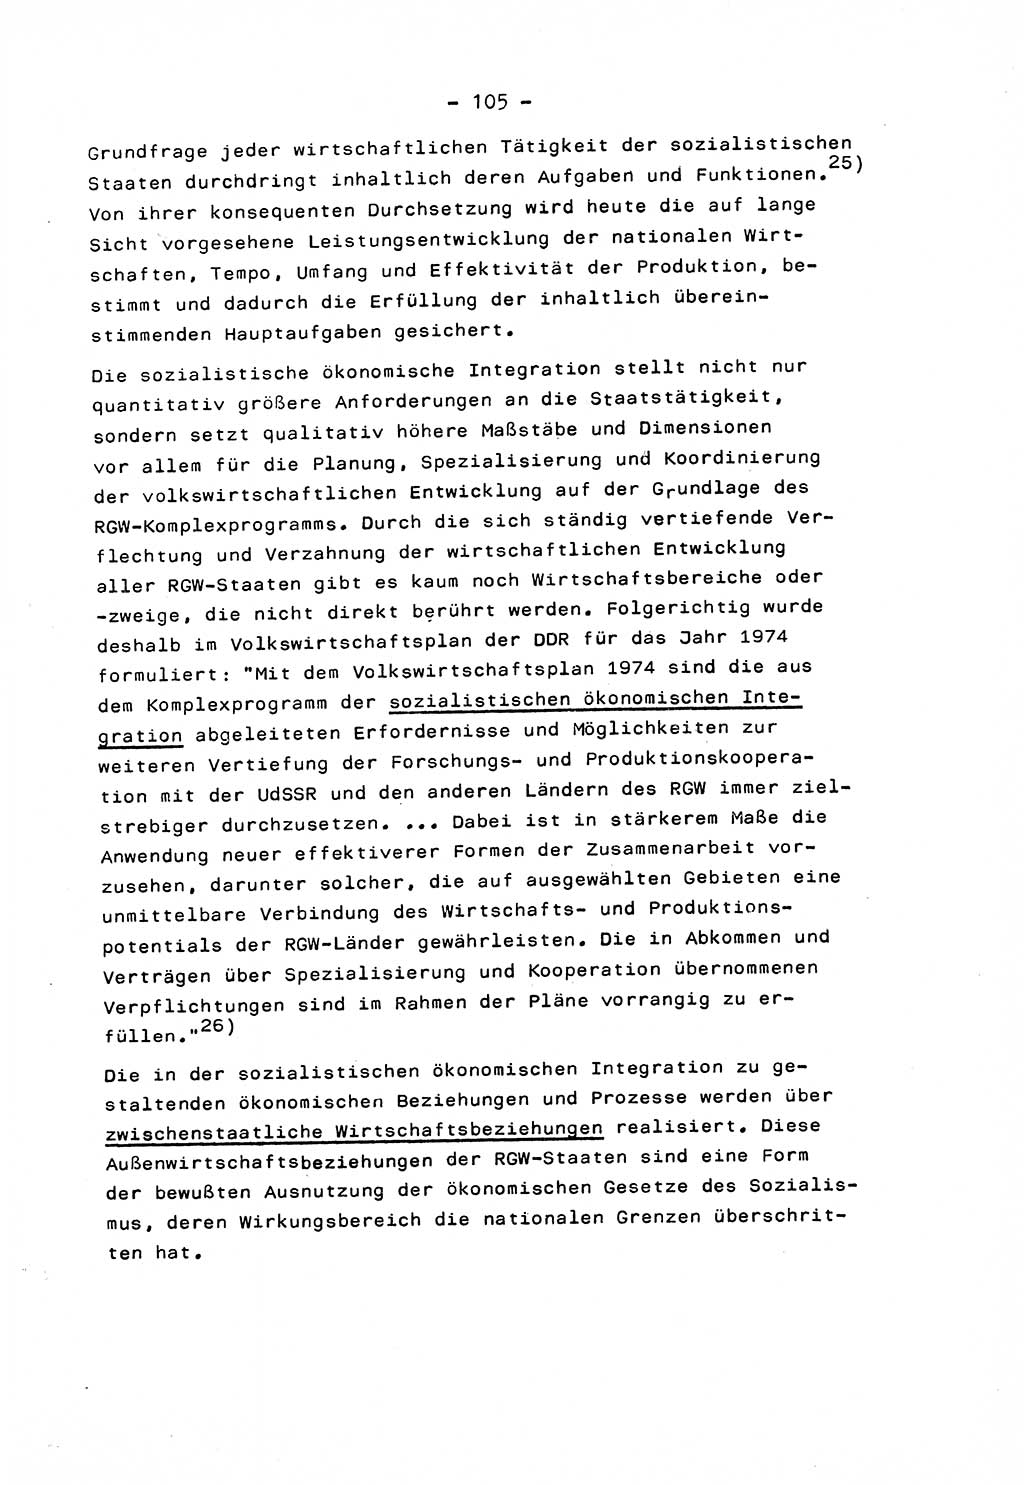 Marxistisch-leninistische Staats- und Rechtstheorie [Deutsche Demokratische Republik (DDR)] 1975, Seite 105 (ML St.-R.-Th. DDR 1975, S. 105)